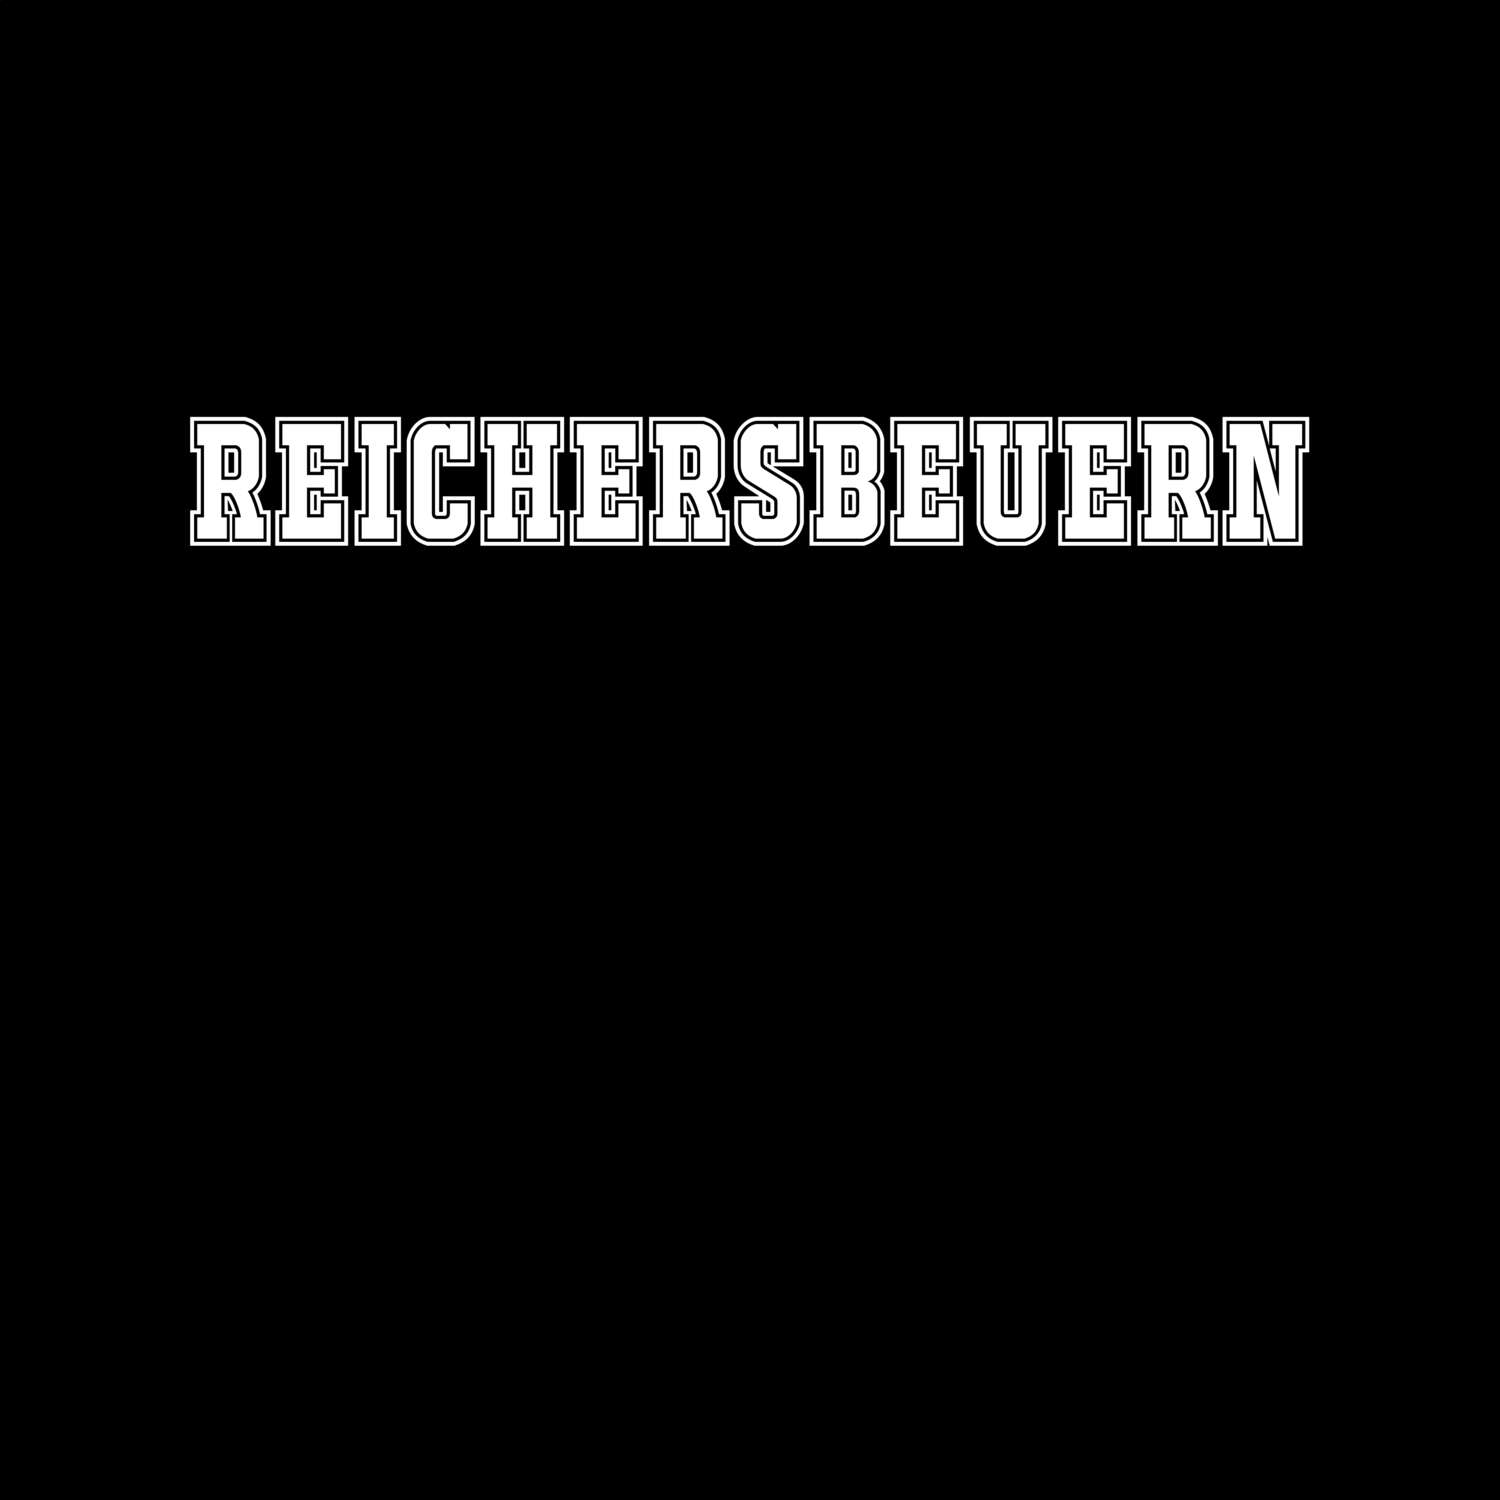 Reichersbeuern T-Shirt »Classic«